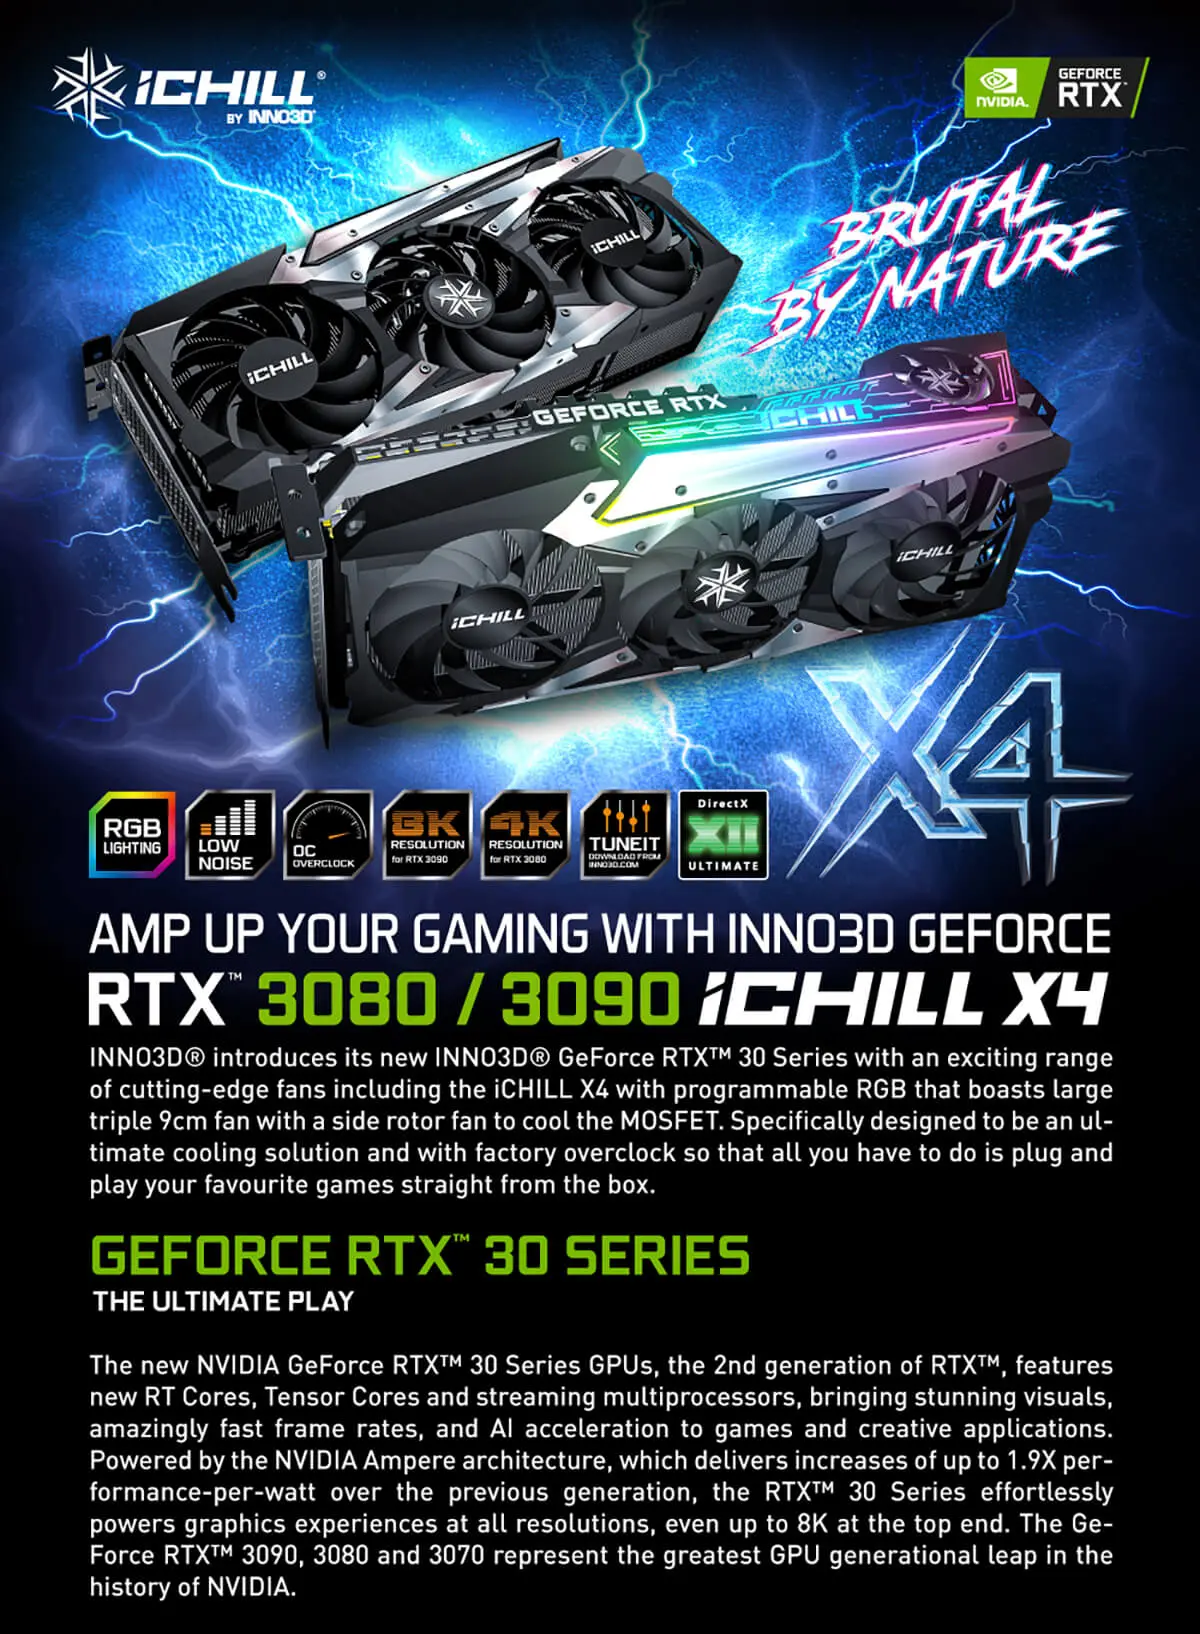 Inno3d Geforce Rtx 3080 Ichill X4 10gb Gddr6x Features